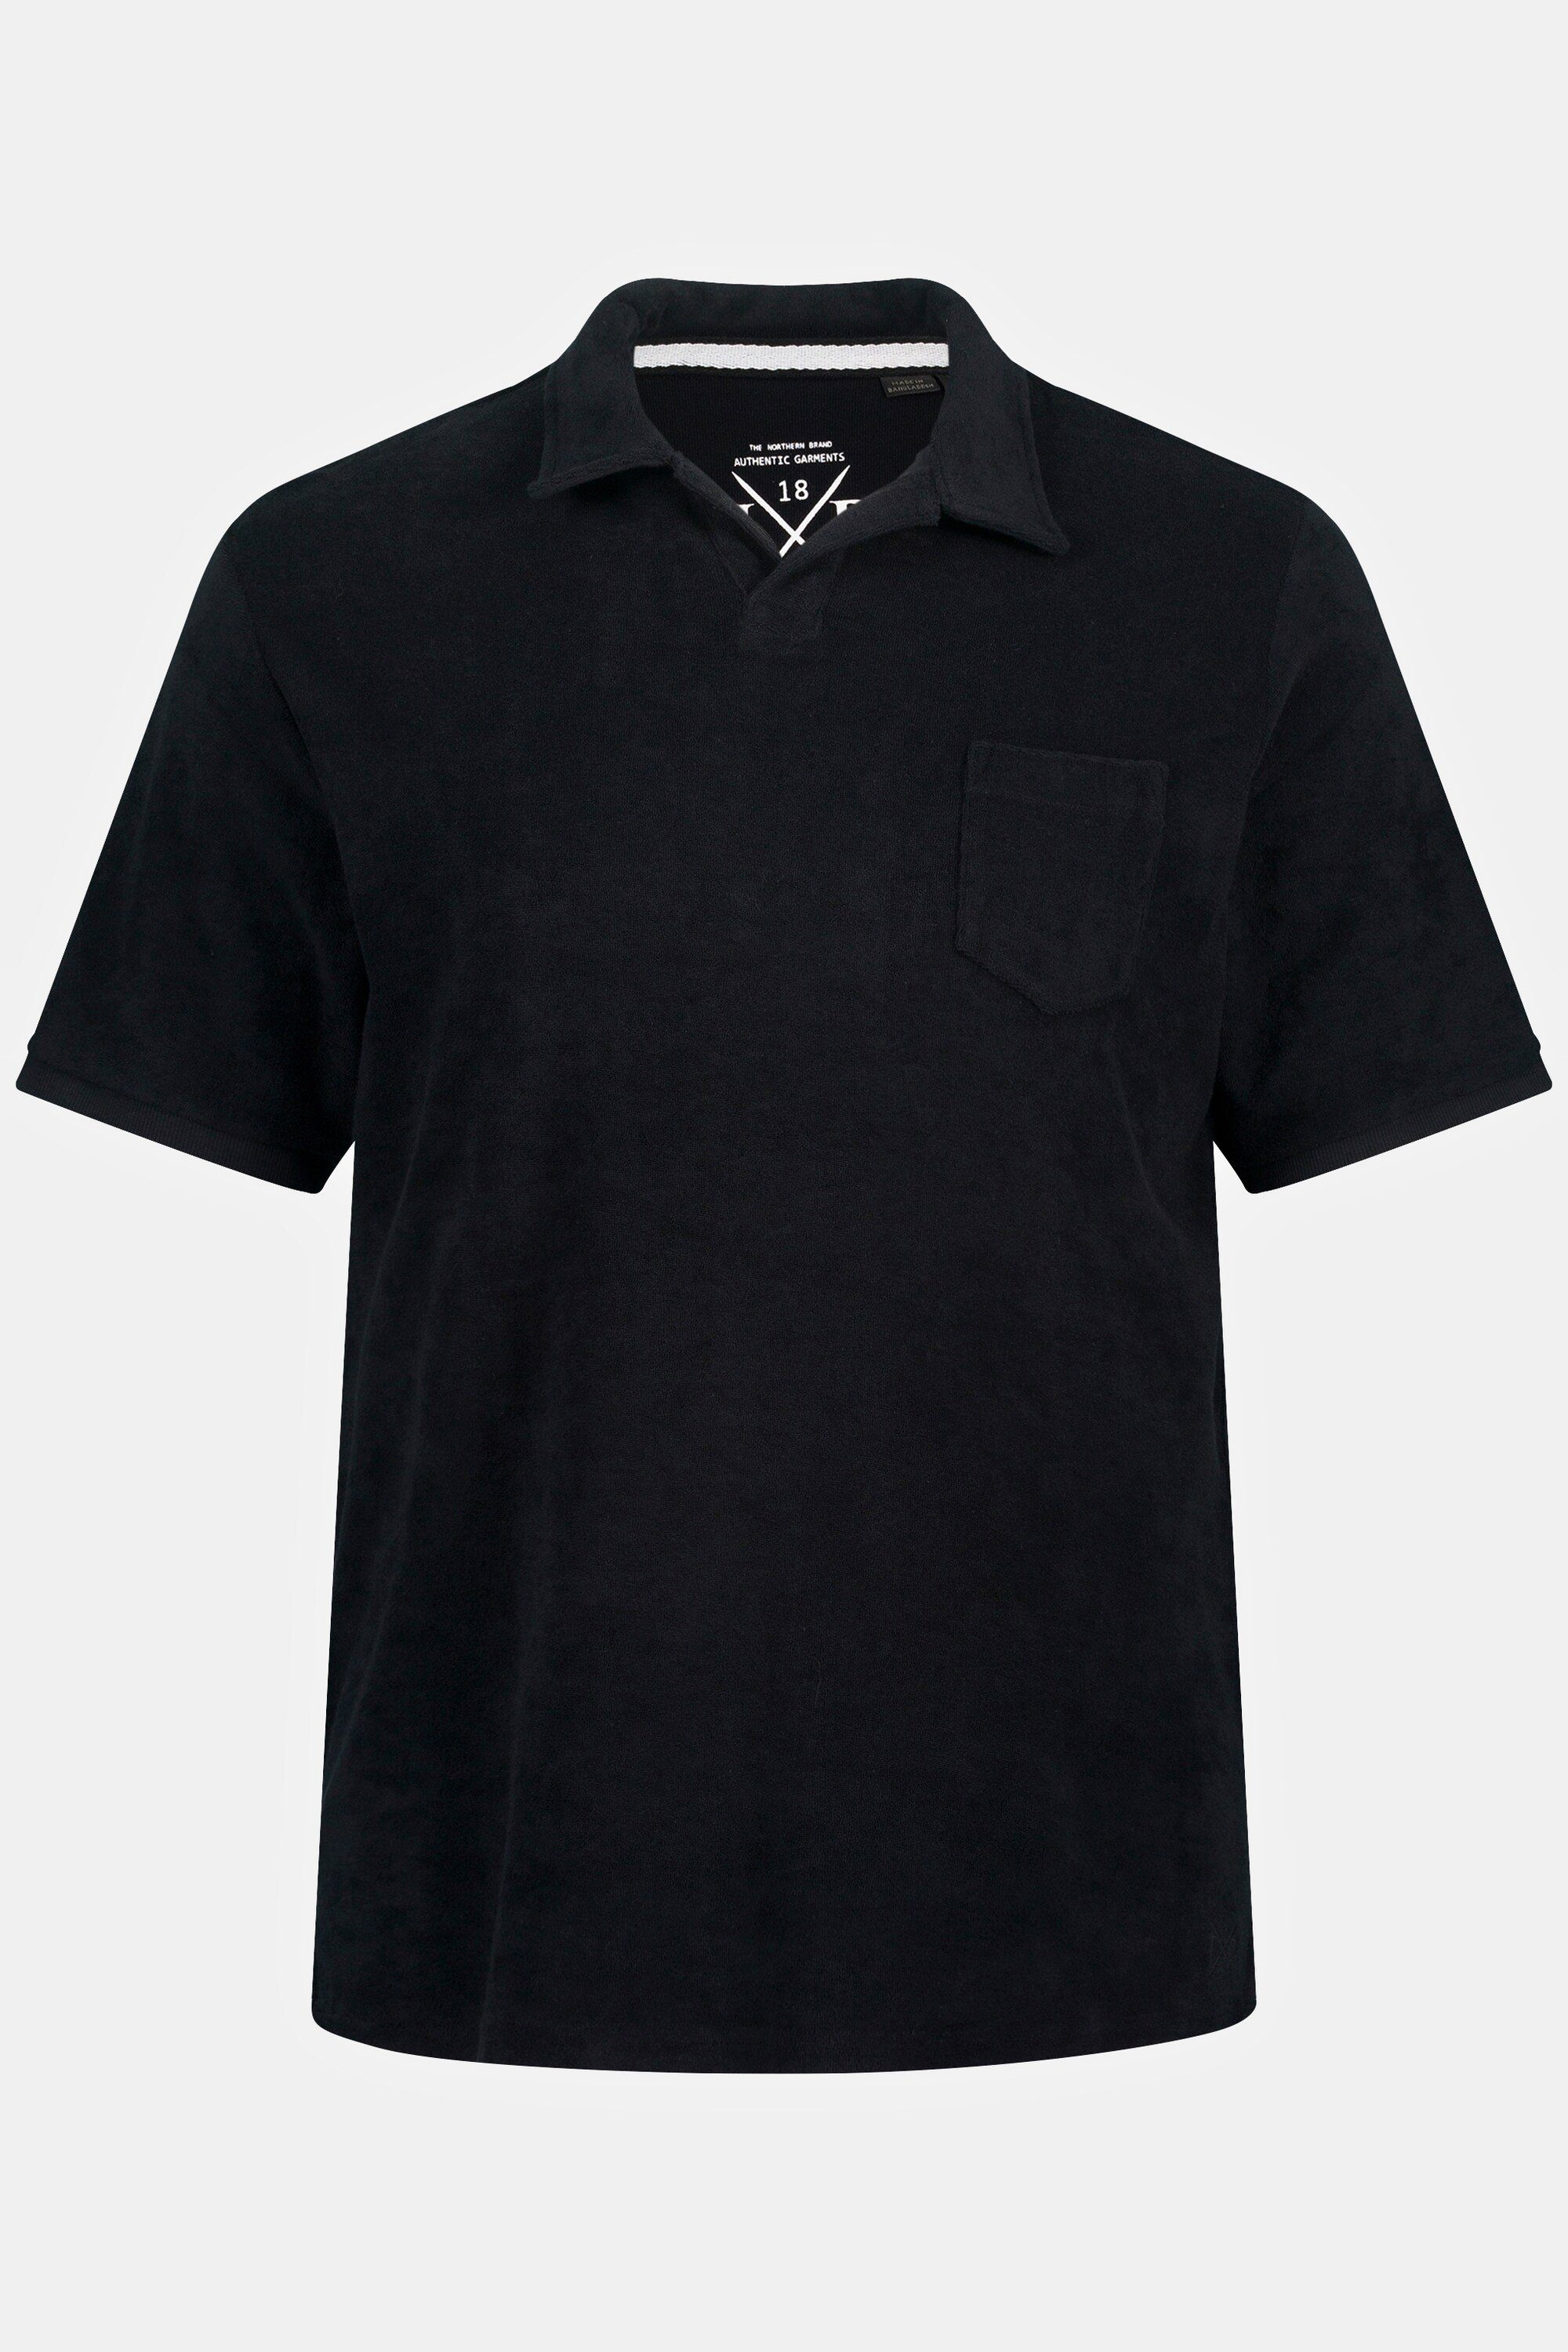 Poloshirt JP1880 Cuba-Kragen Frottee schwarz Poloshirt Halbarm